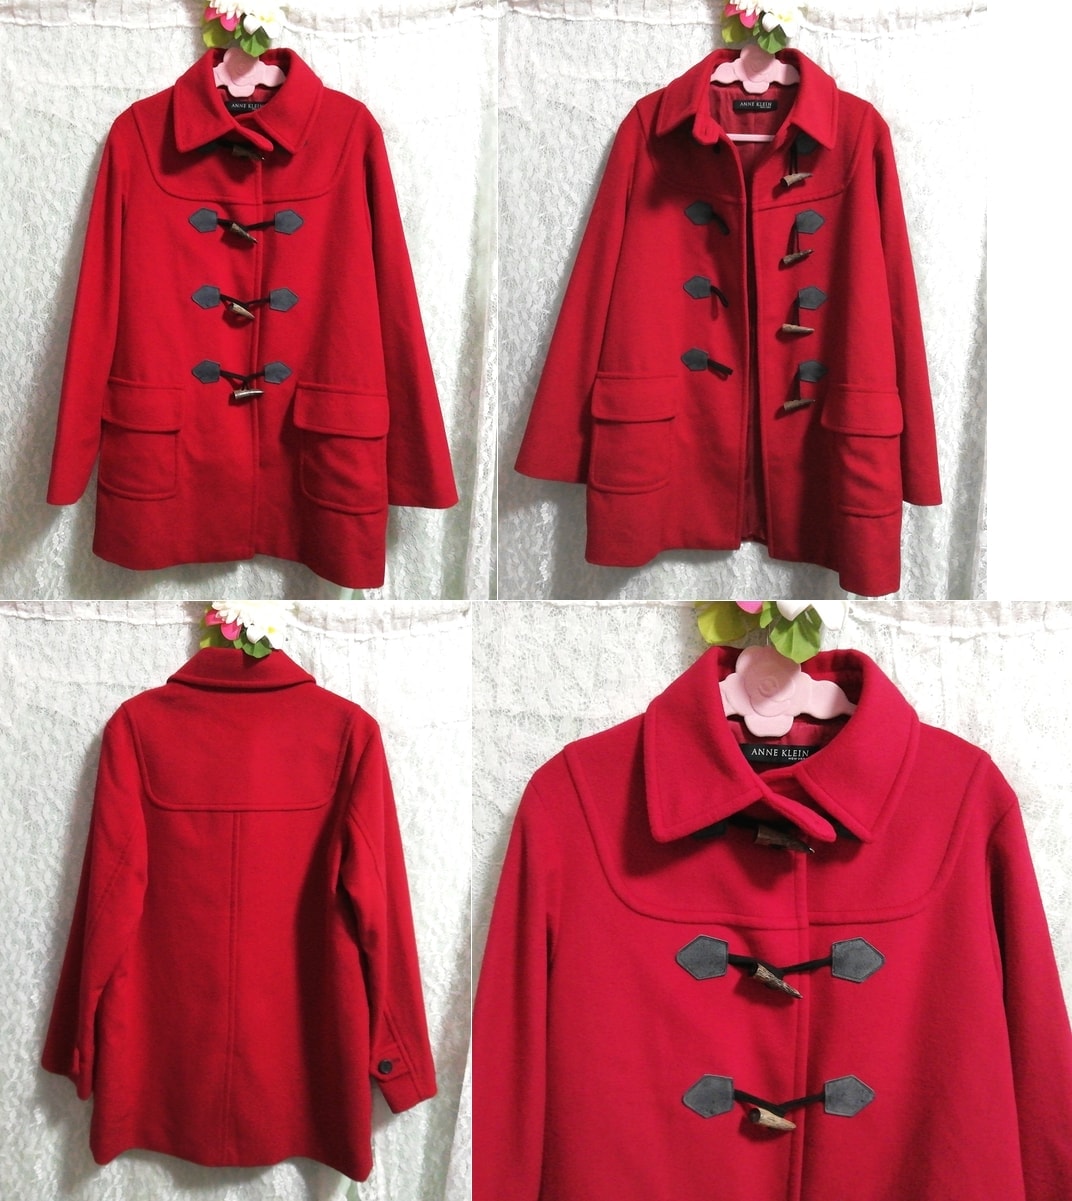 معطف من القماش الخشن من صوف الأنجورا الأحمر من آن كلاين نيويورك, معطف, معطف بشكل عام, حجم م